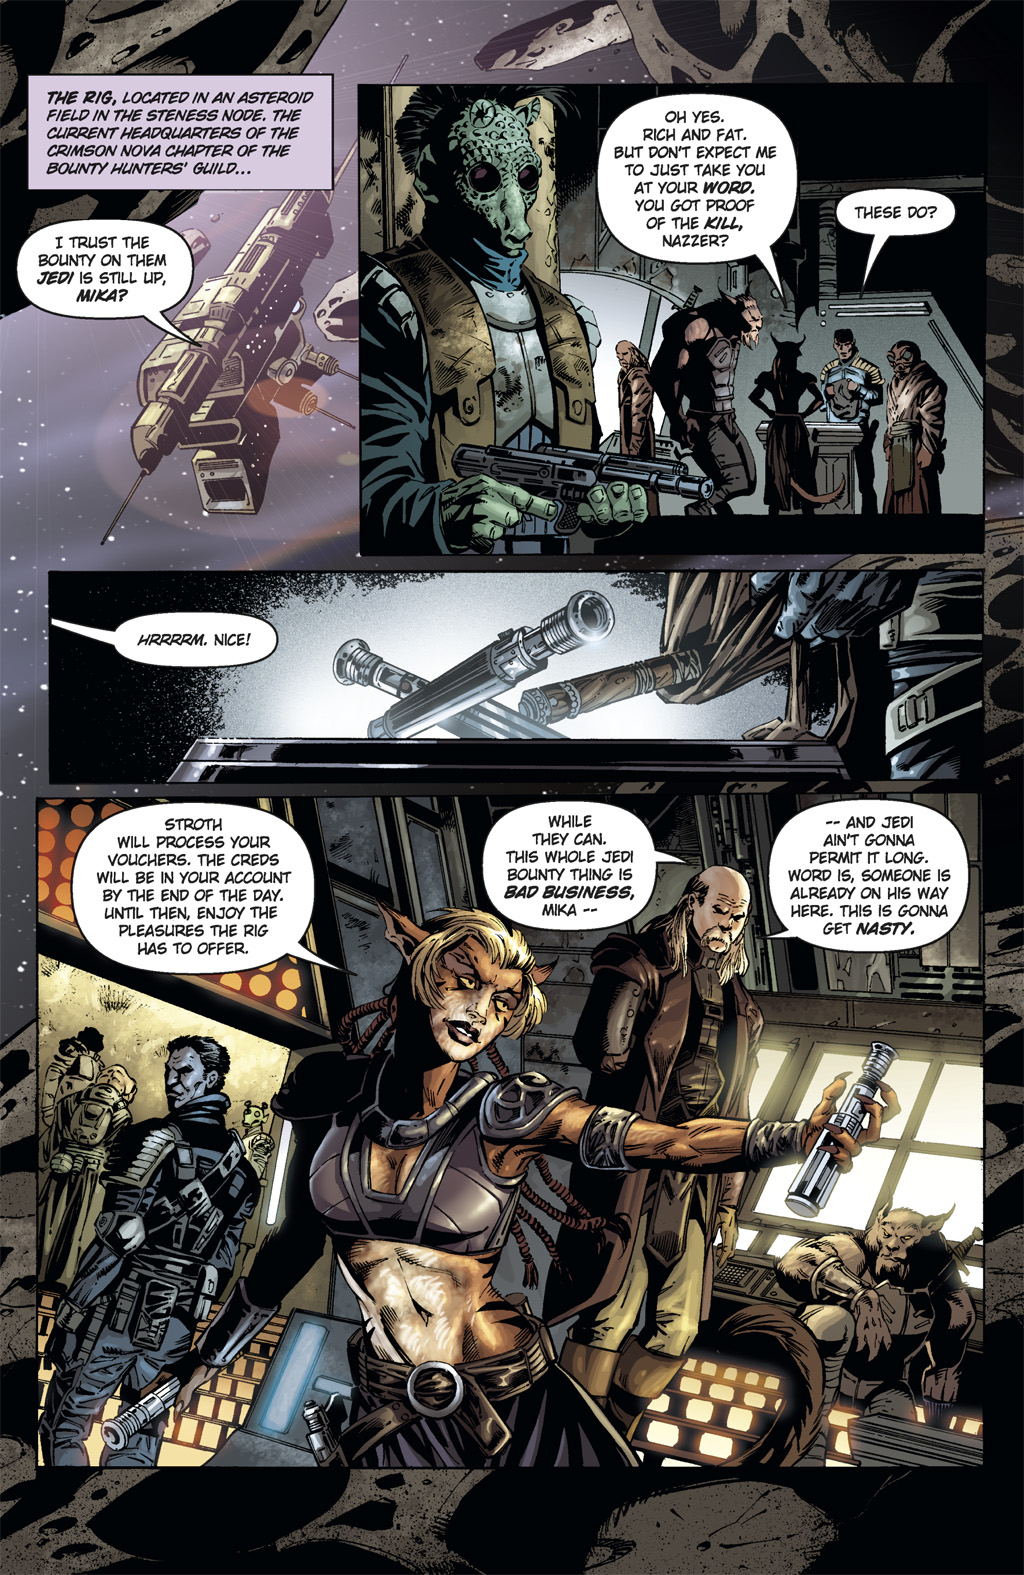 Read online Star Wars: Clone Wars comic -  Issue # TPB 6 - 16